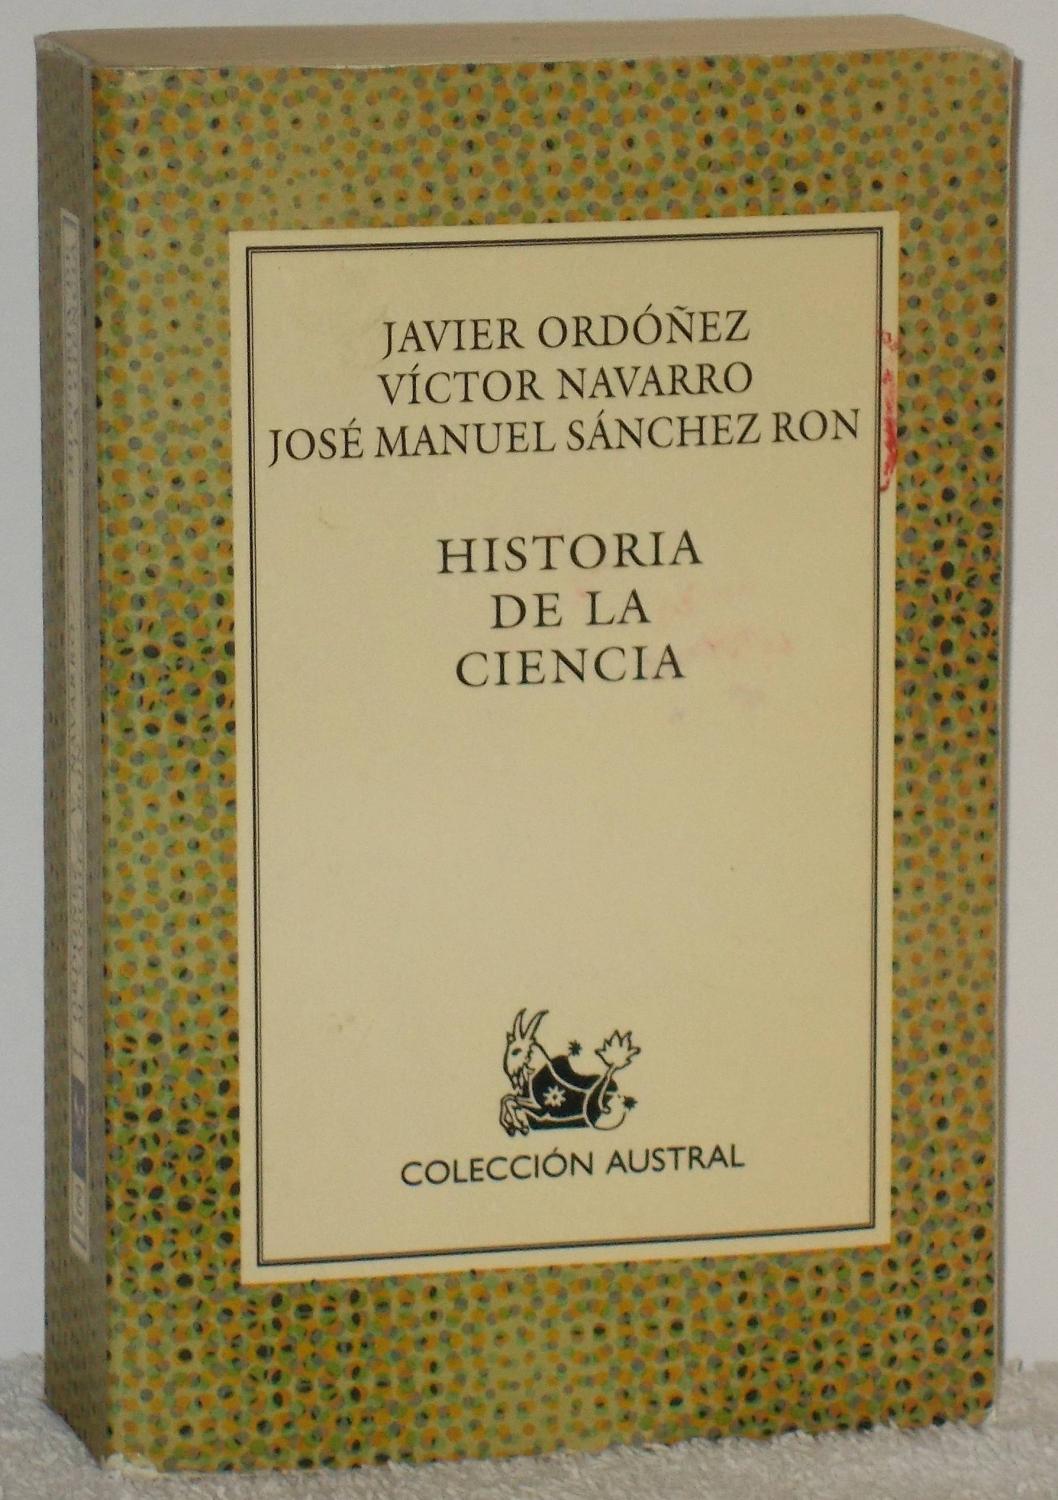 Historia de la ciencia - Ordóñez, Javier - Navarro, Víctor - Sánchez Ron, José Manuel